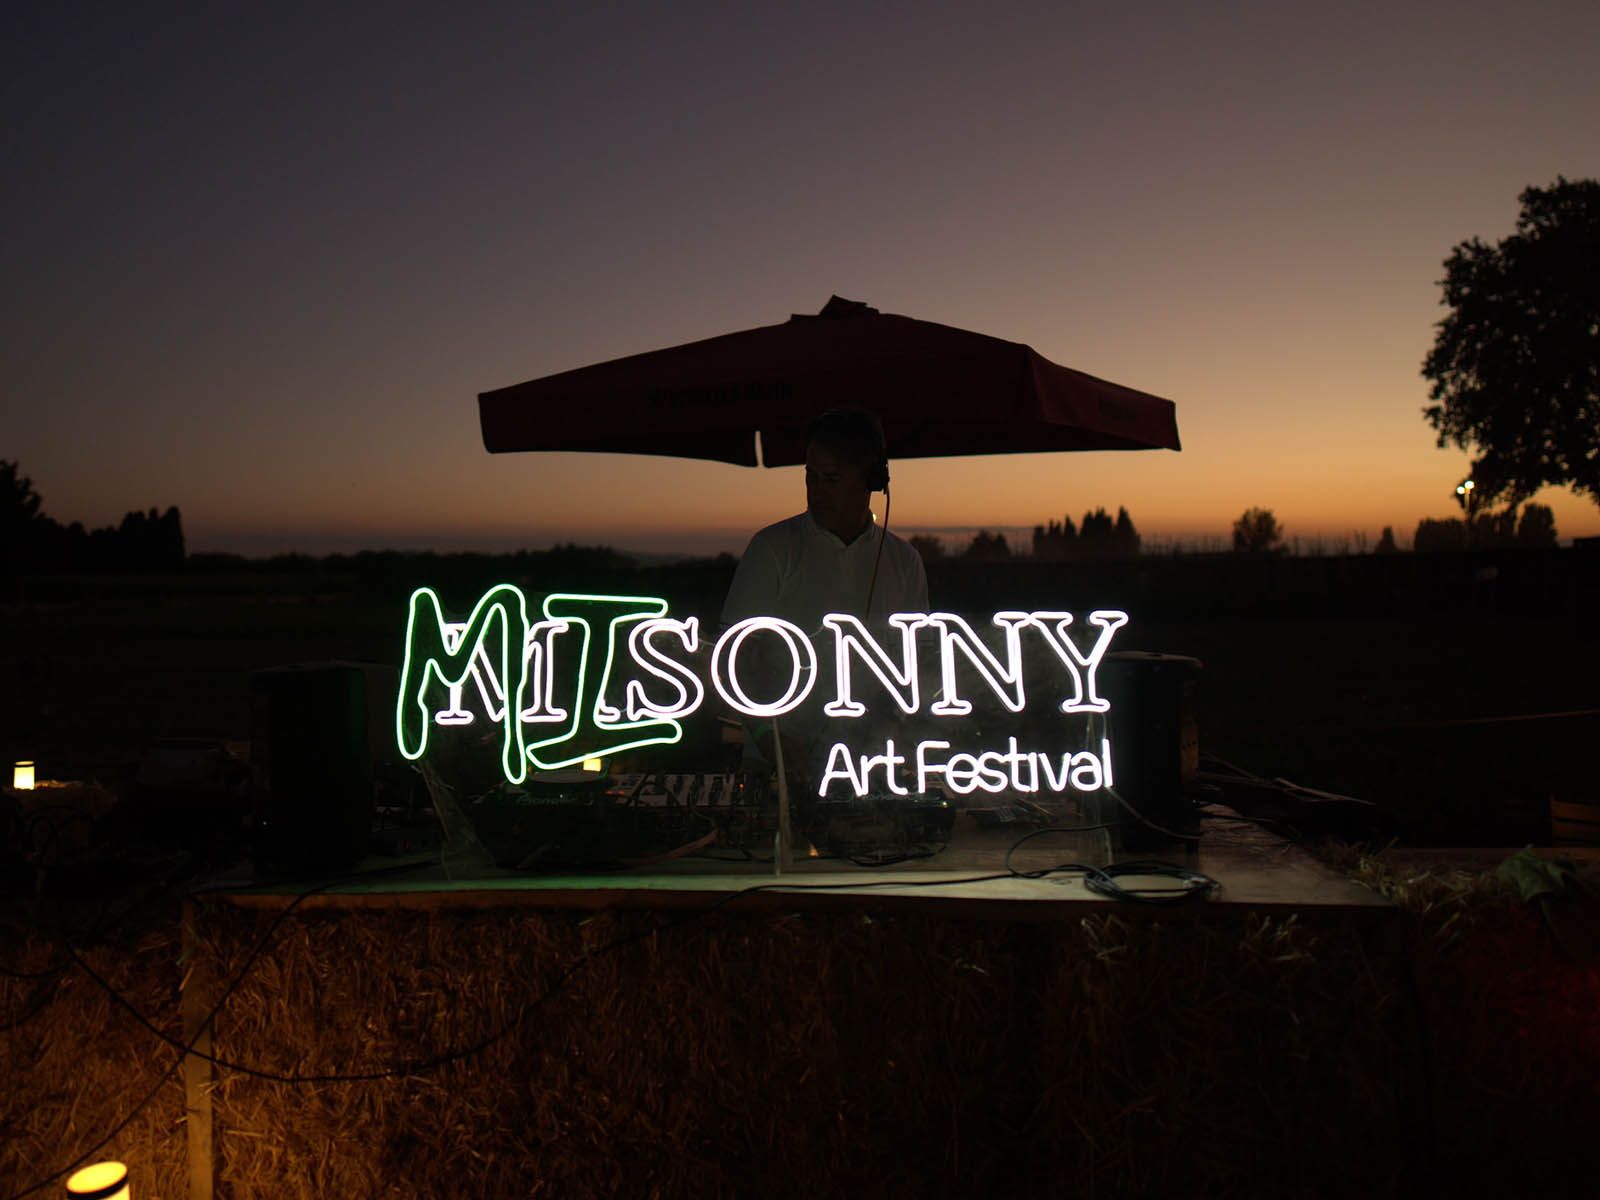 Misonny Art Festival: the showcase for emerging artists